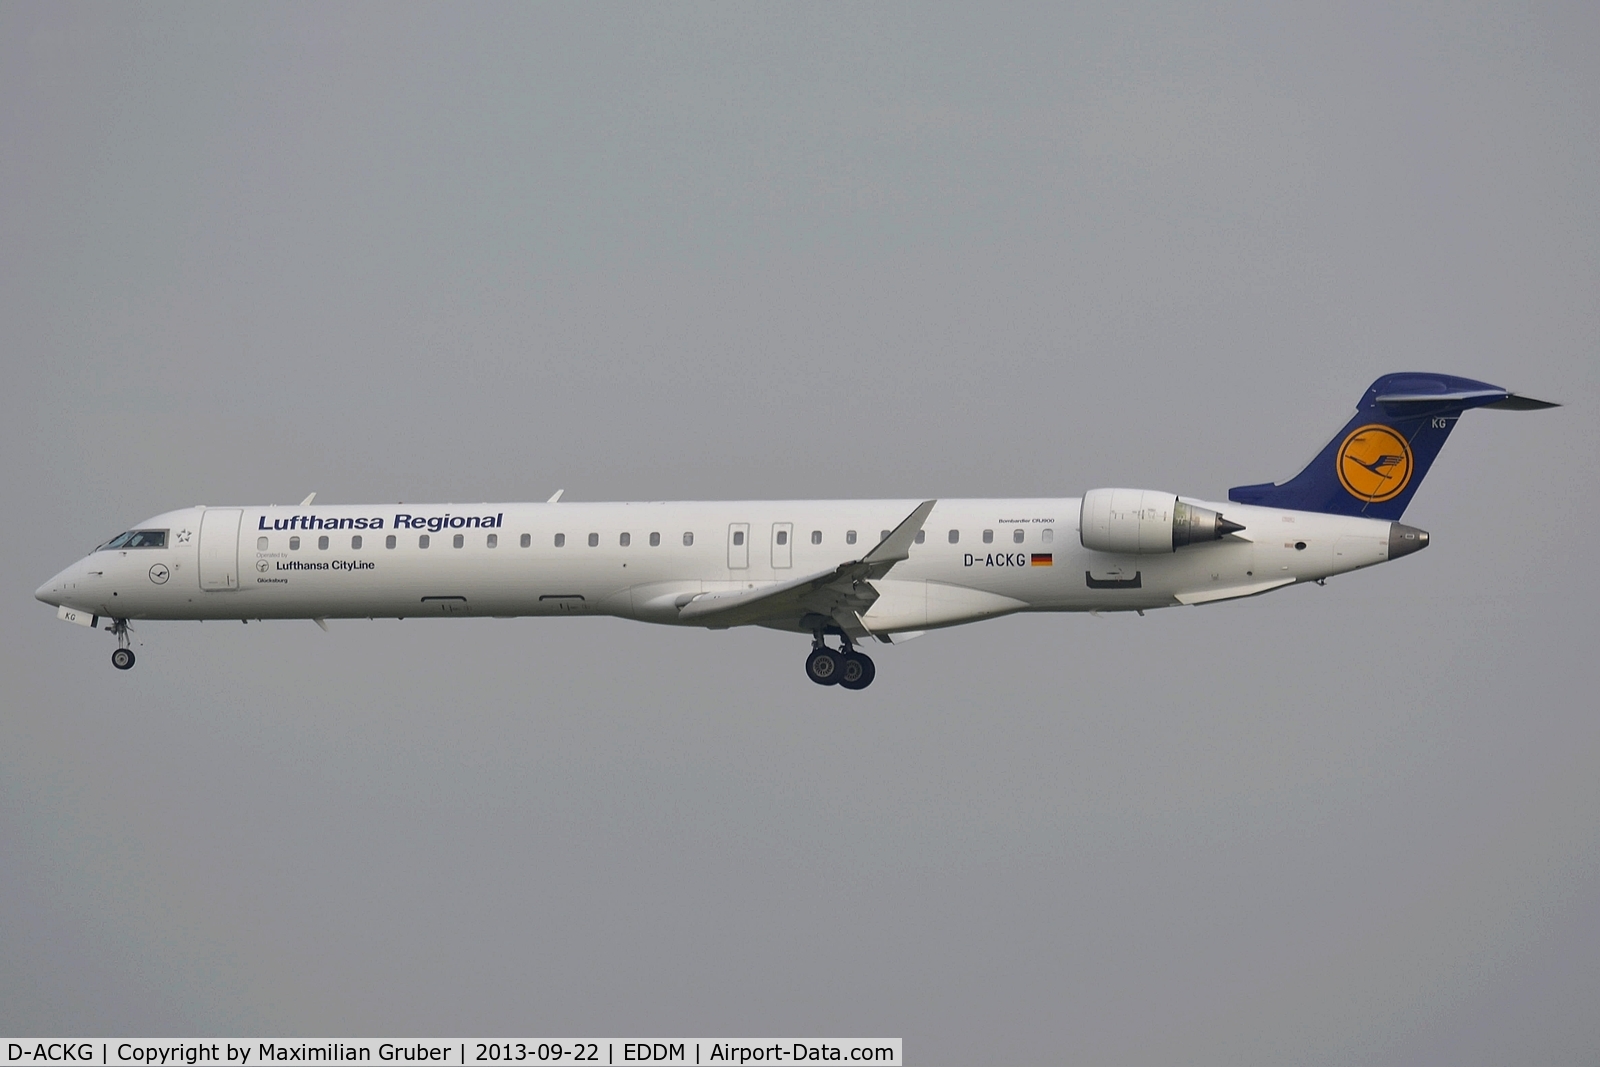 D-ACKG, 2006 Bombardier CRJ-900LR (CL-600-2D24) C/N 15084, Lufthansa Cityline